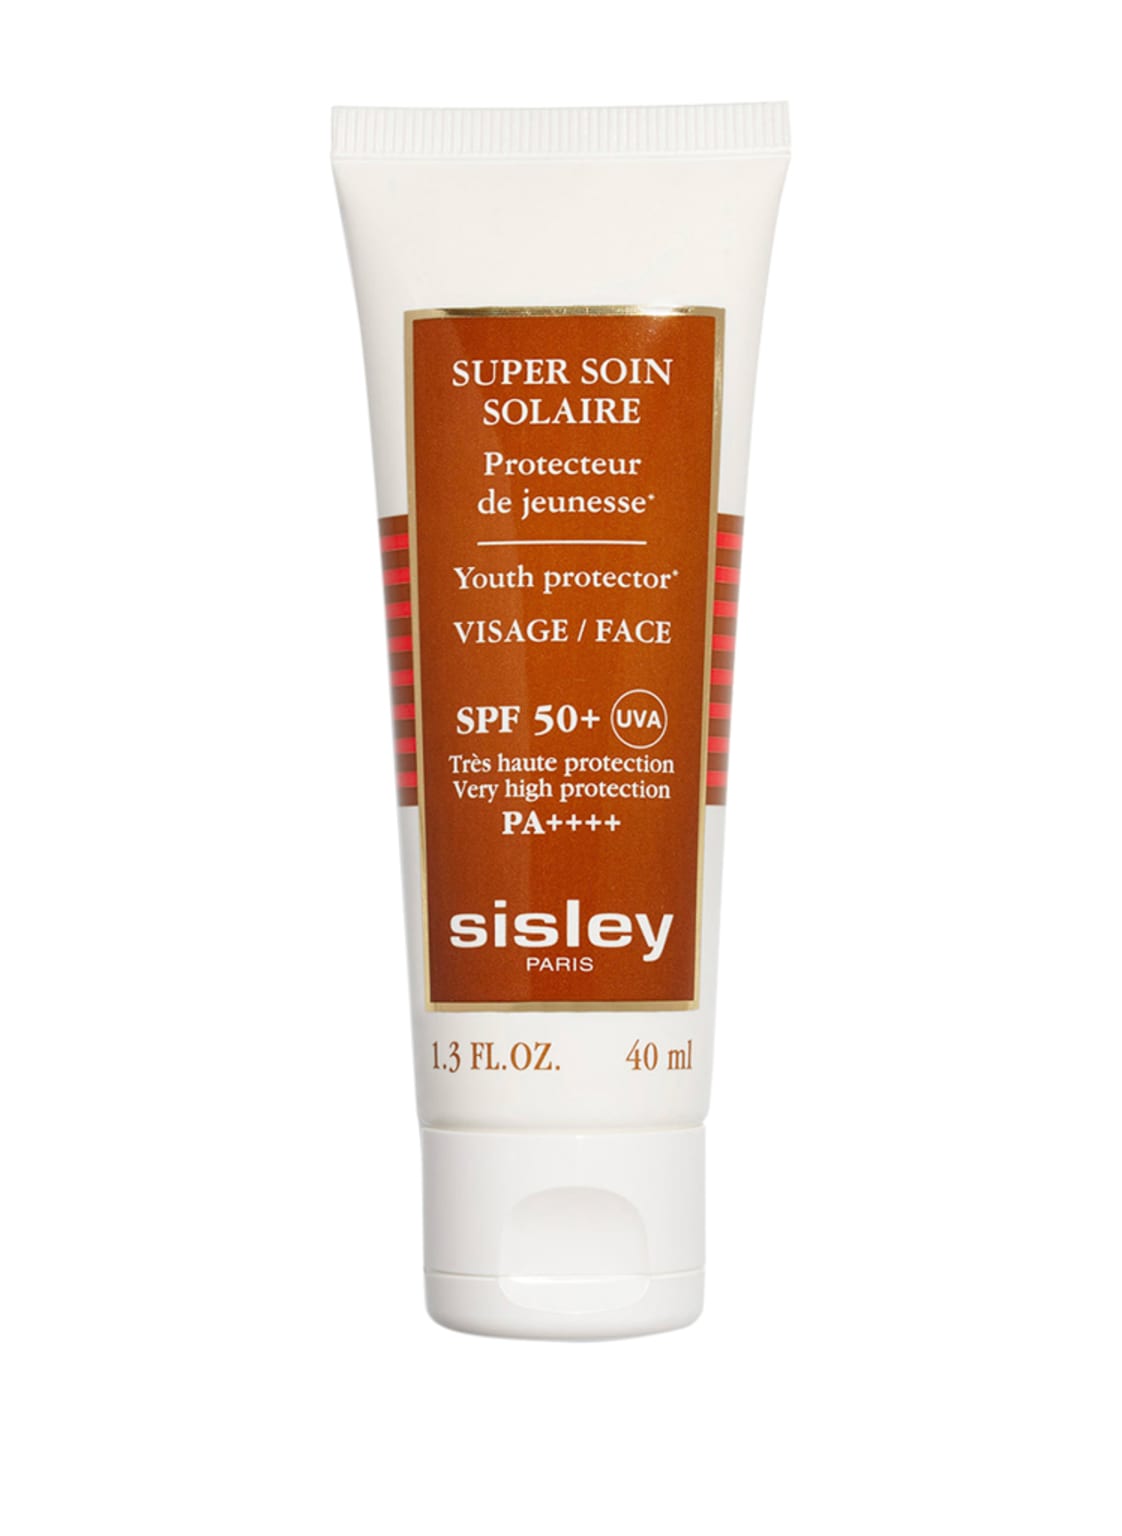 Sisley Paris Super Soin Solaire Visage Spf 50+ Sehr hoher Sonnenschutz für das Gesicht 40 ml von sisley Paris